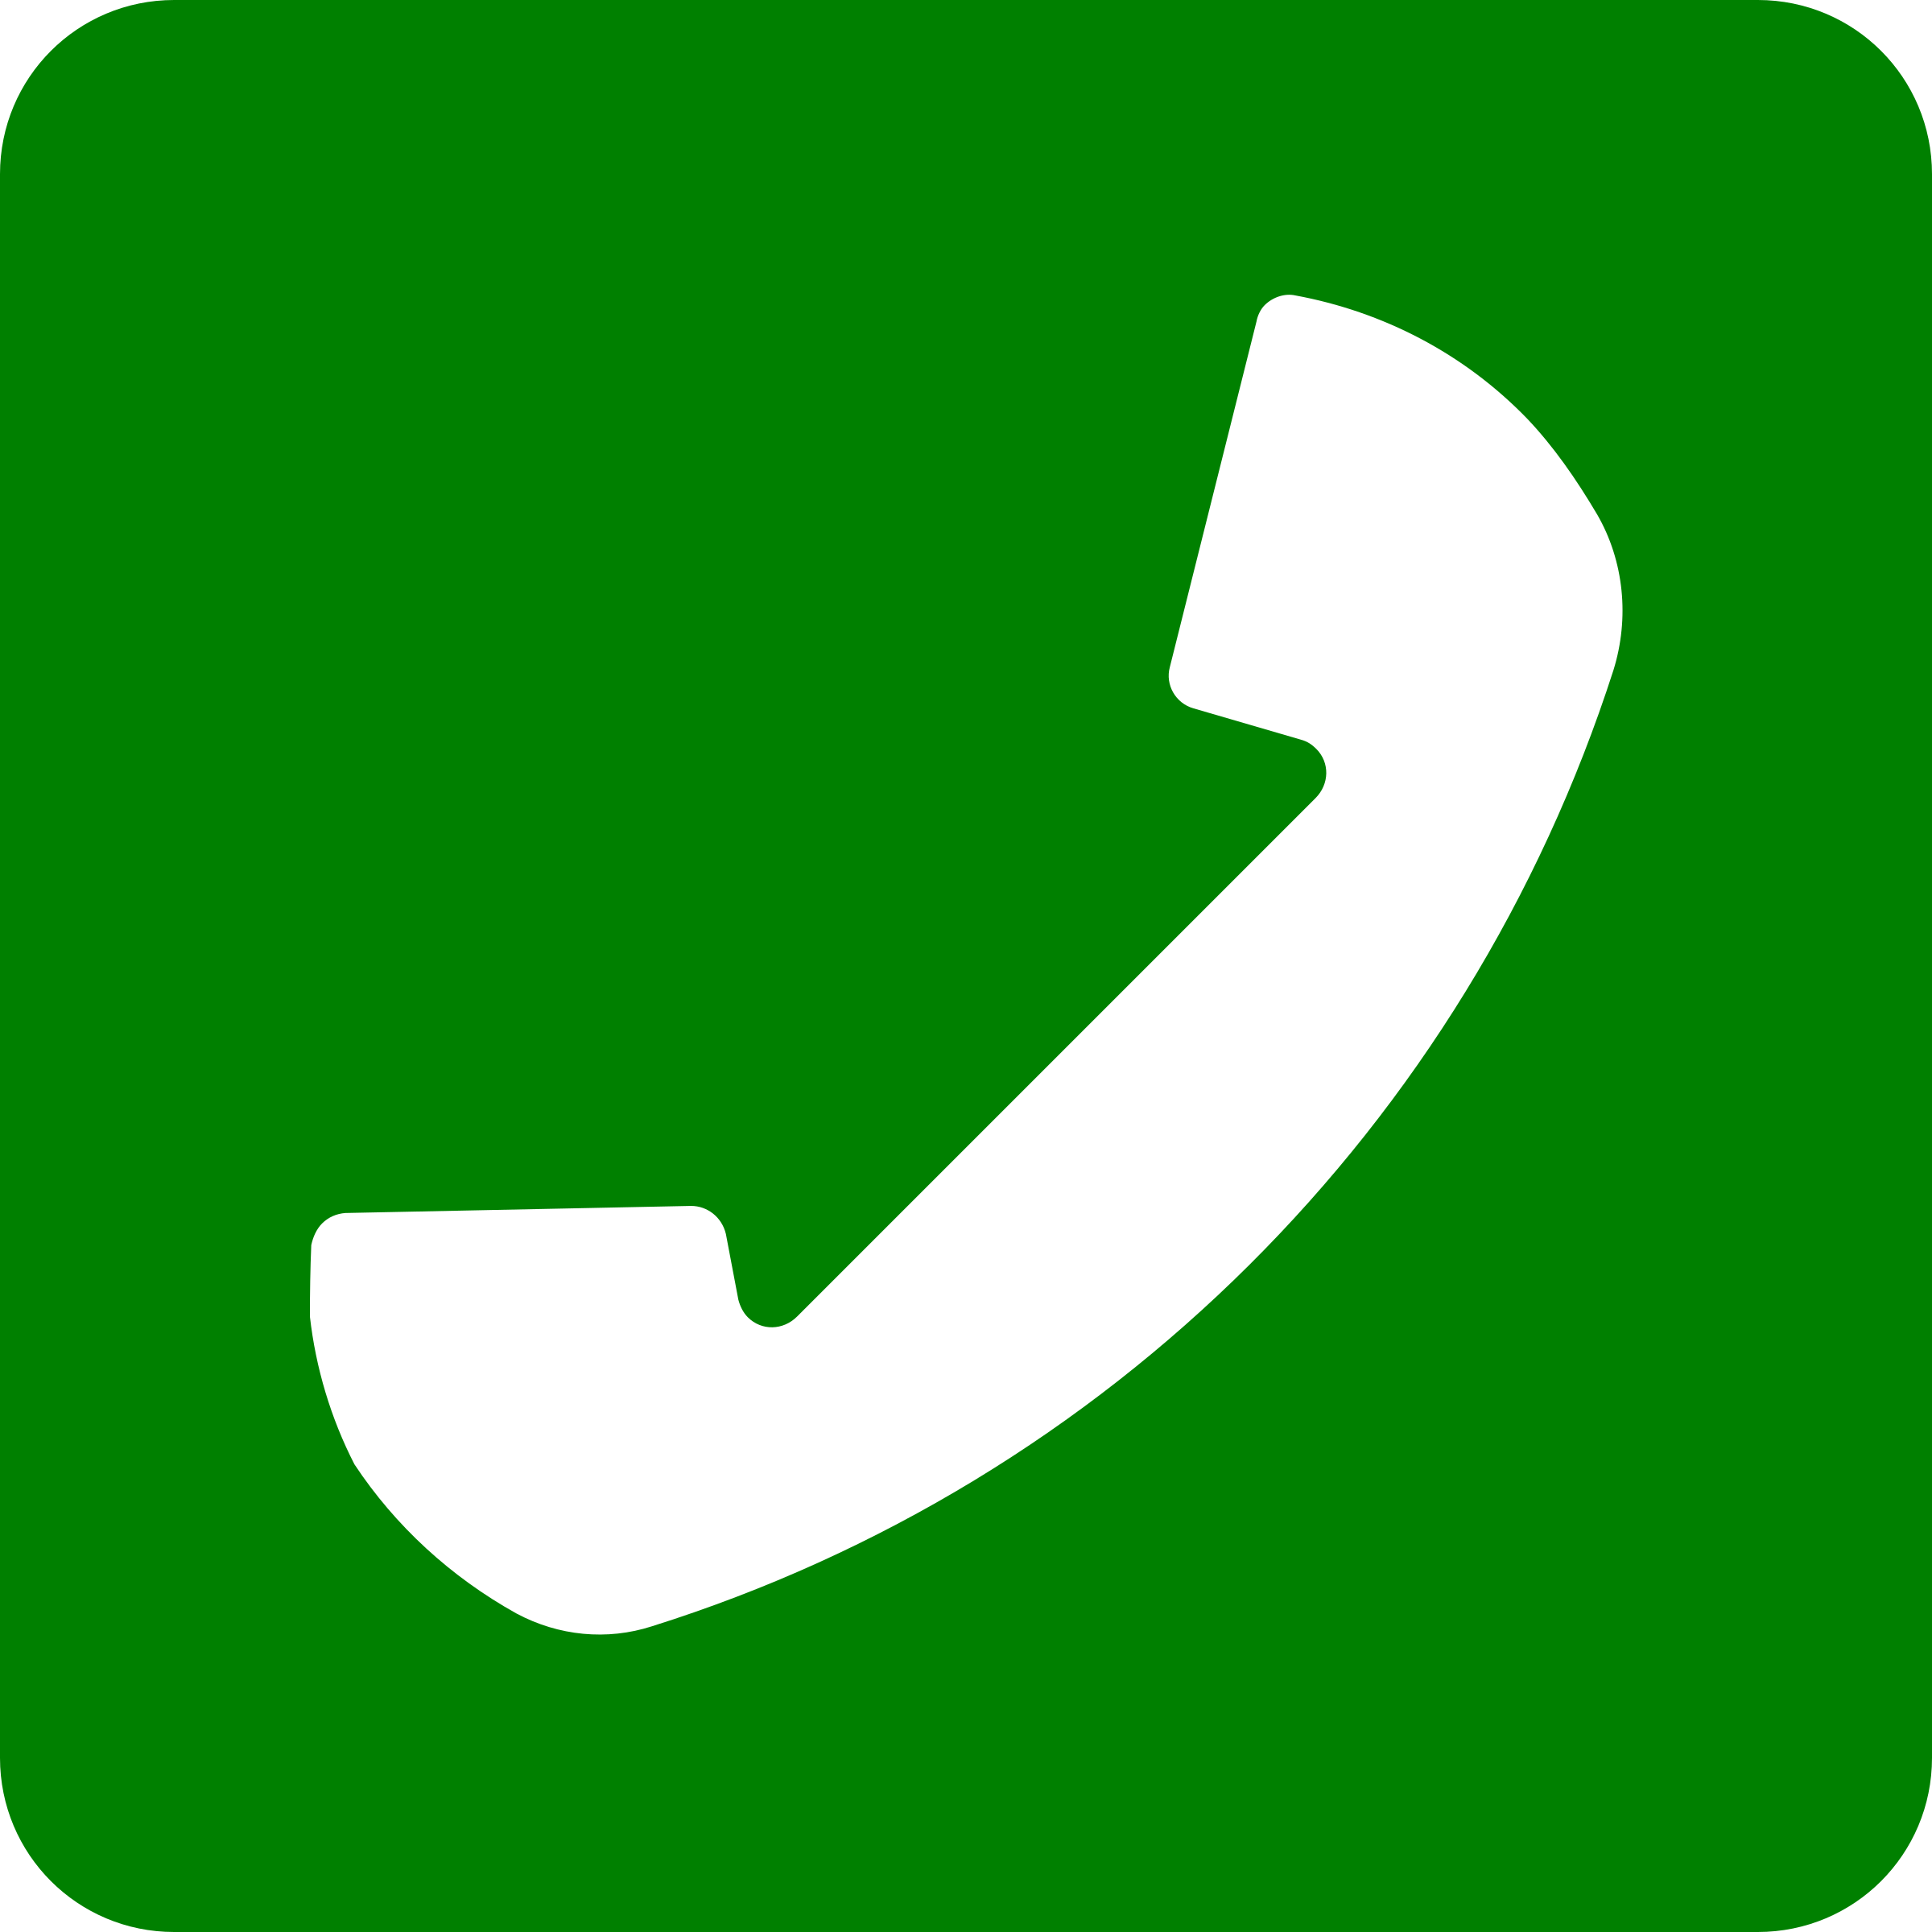 Ярлык звонка. Знак телефона. Телефонная трубка. Значок трубки телефона. Зеленая трубка значок.